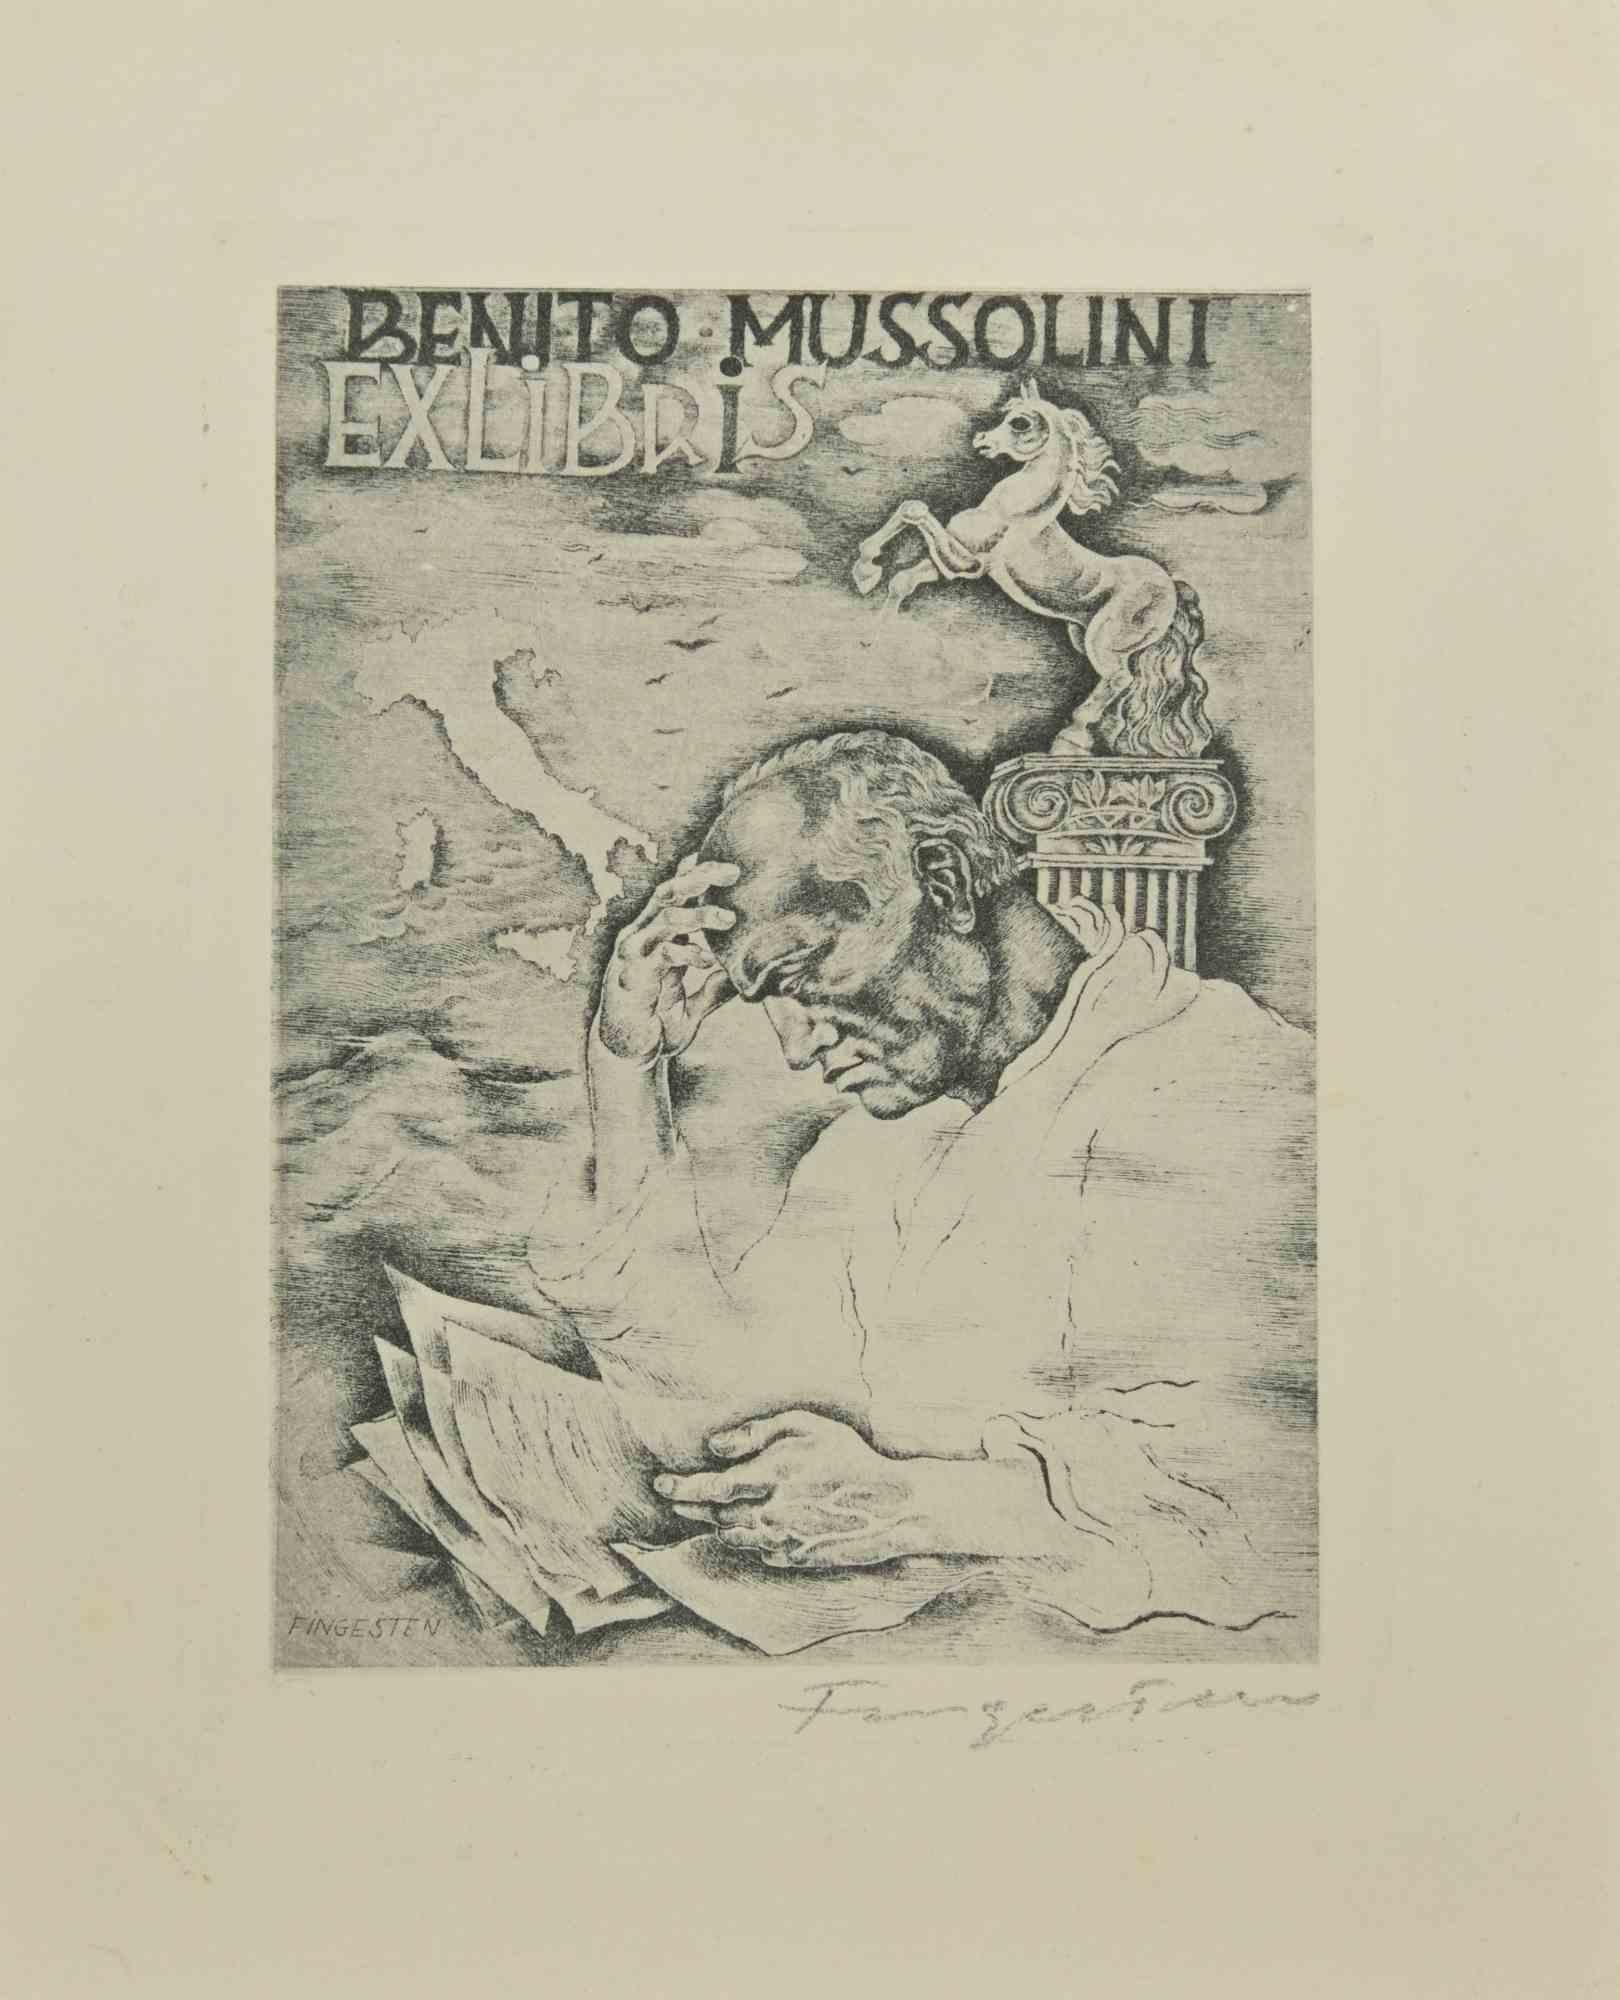 Ex Libris - Benito Mussolini ist eine Radierung erstellt von  Michel Fingesten.

Handsigniert am unteren Rand.

Gute Bedingungen.

Michel Fingesten (1884 - 1943) war ein tschechischer Maler und Graveur jüdischer Herkunft. Er gilt als einer der